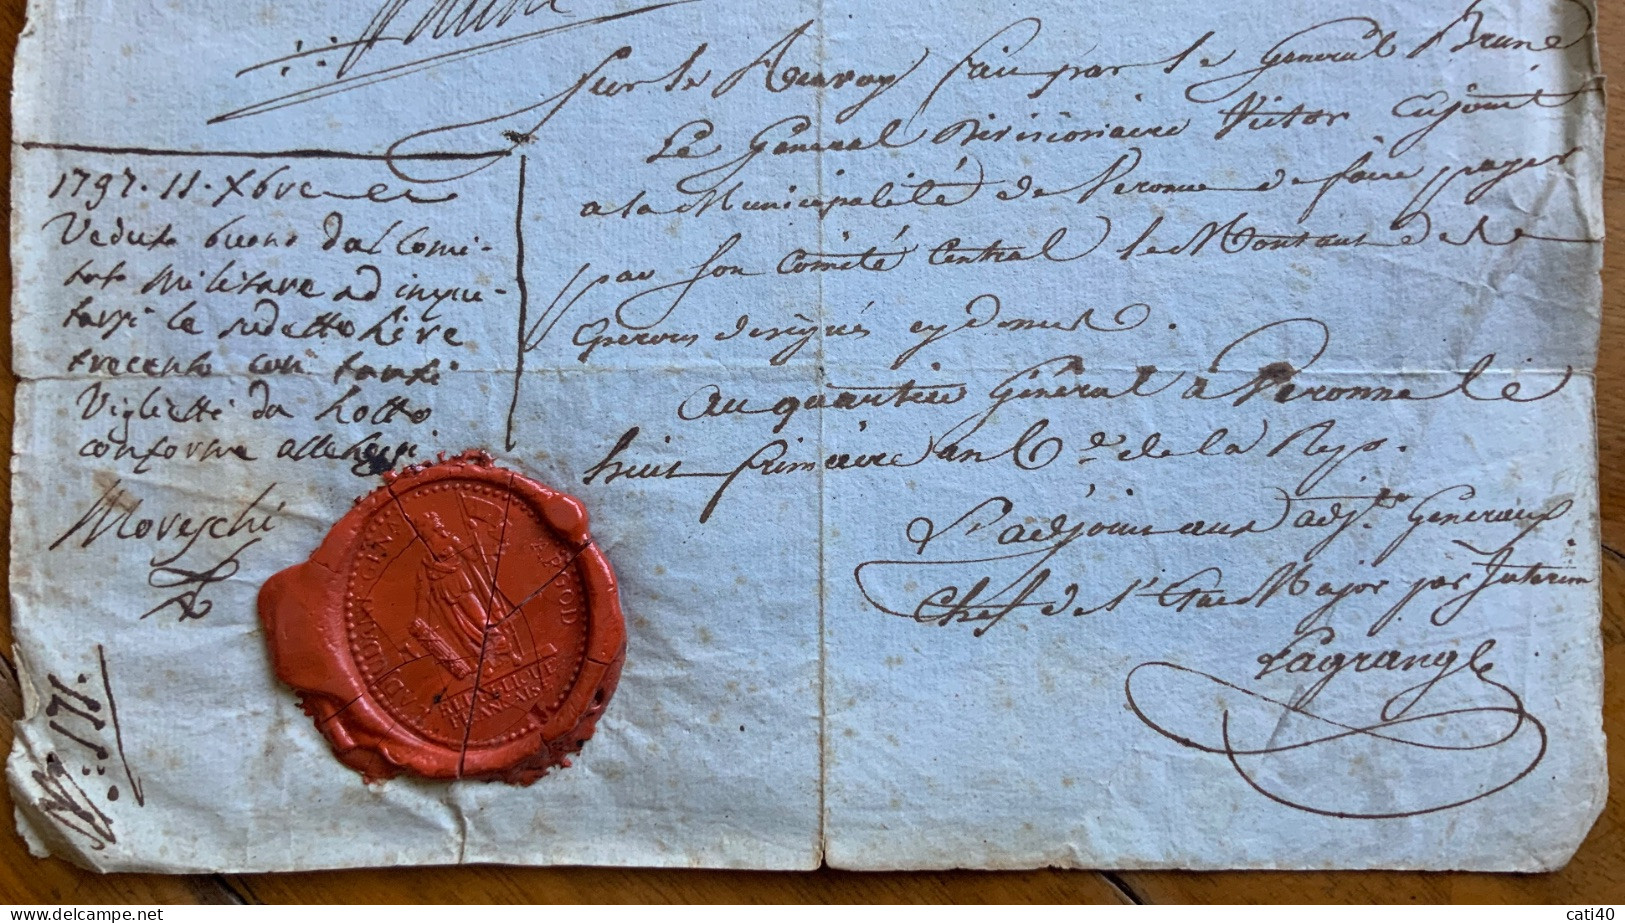 REPUBBLICA FRANCAISE - SIGILLO SU RICEVUTA DI 300 LIRE DE MILAN.. FIRMATA E CONTROFIRMATA L'11 DIC. 1797 - RRR - Historical Documents